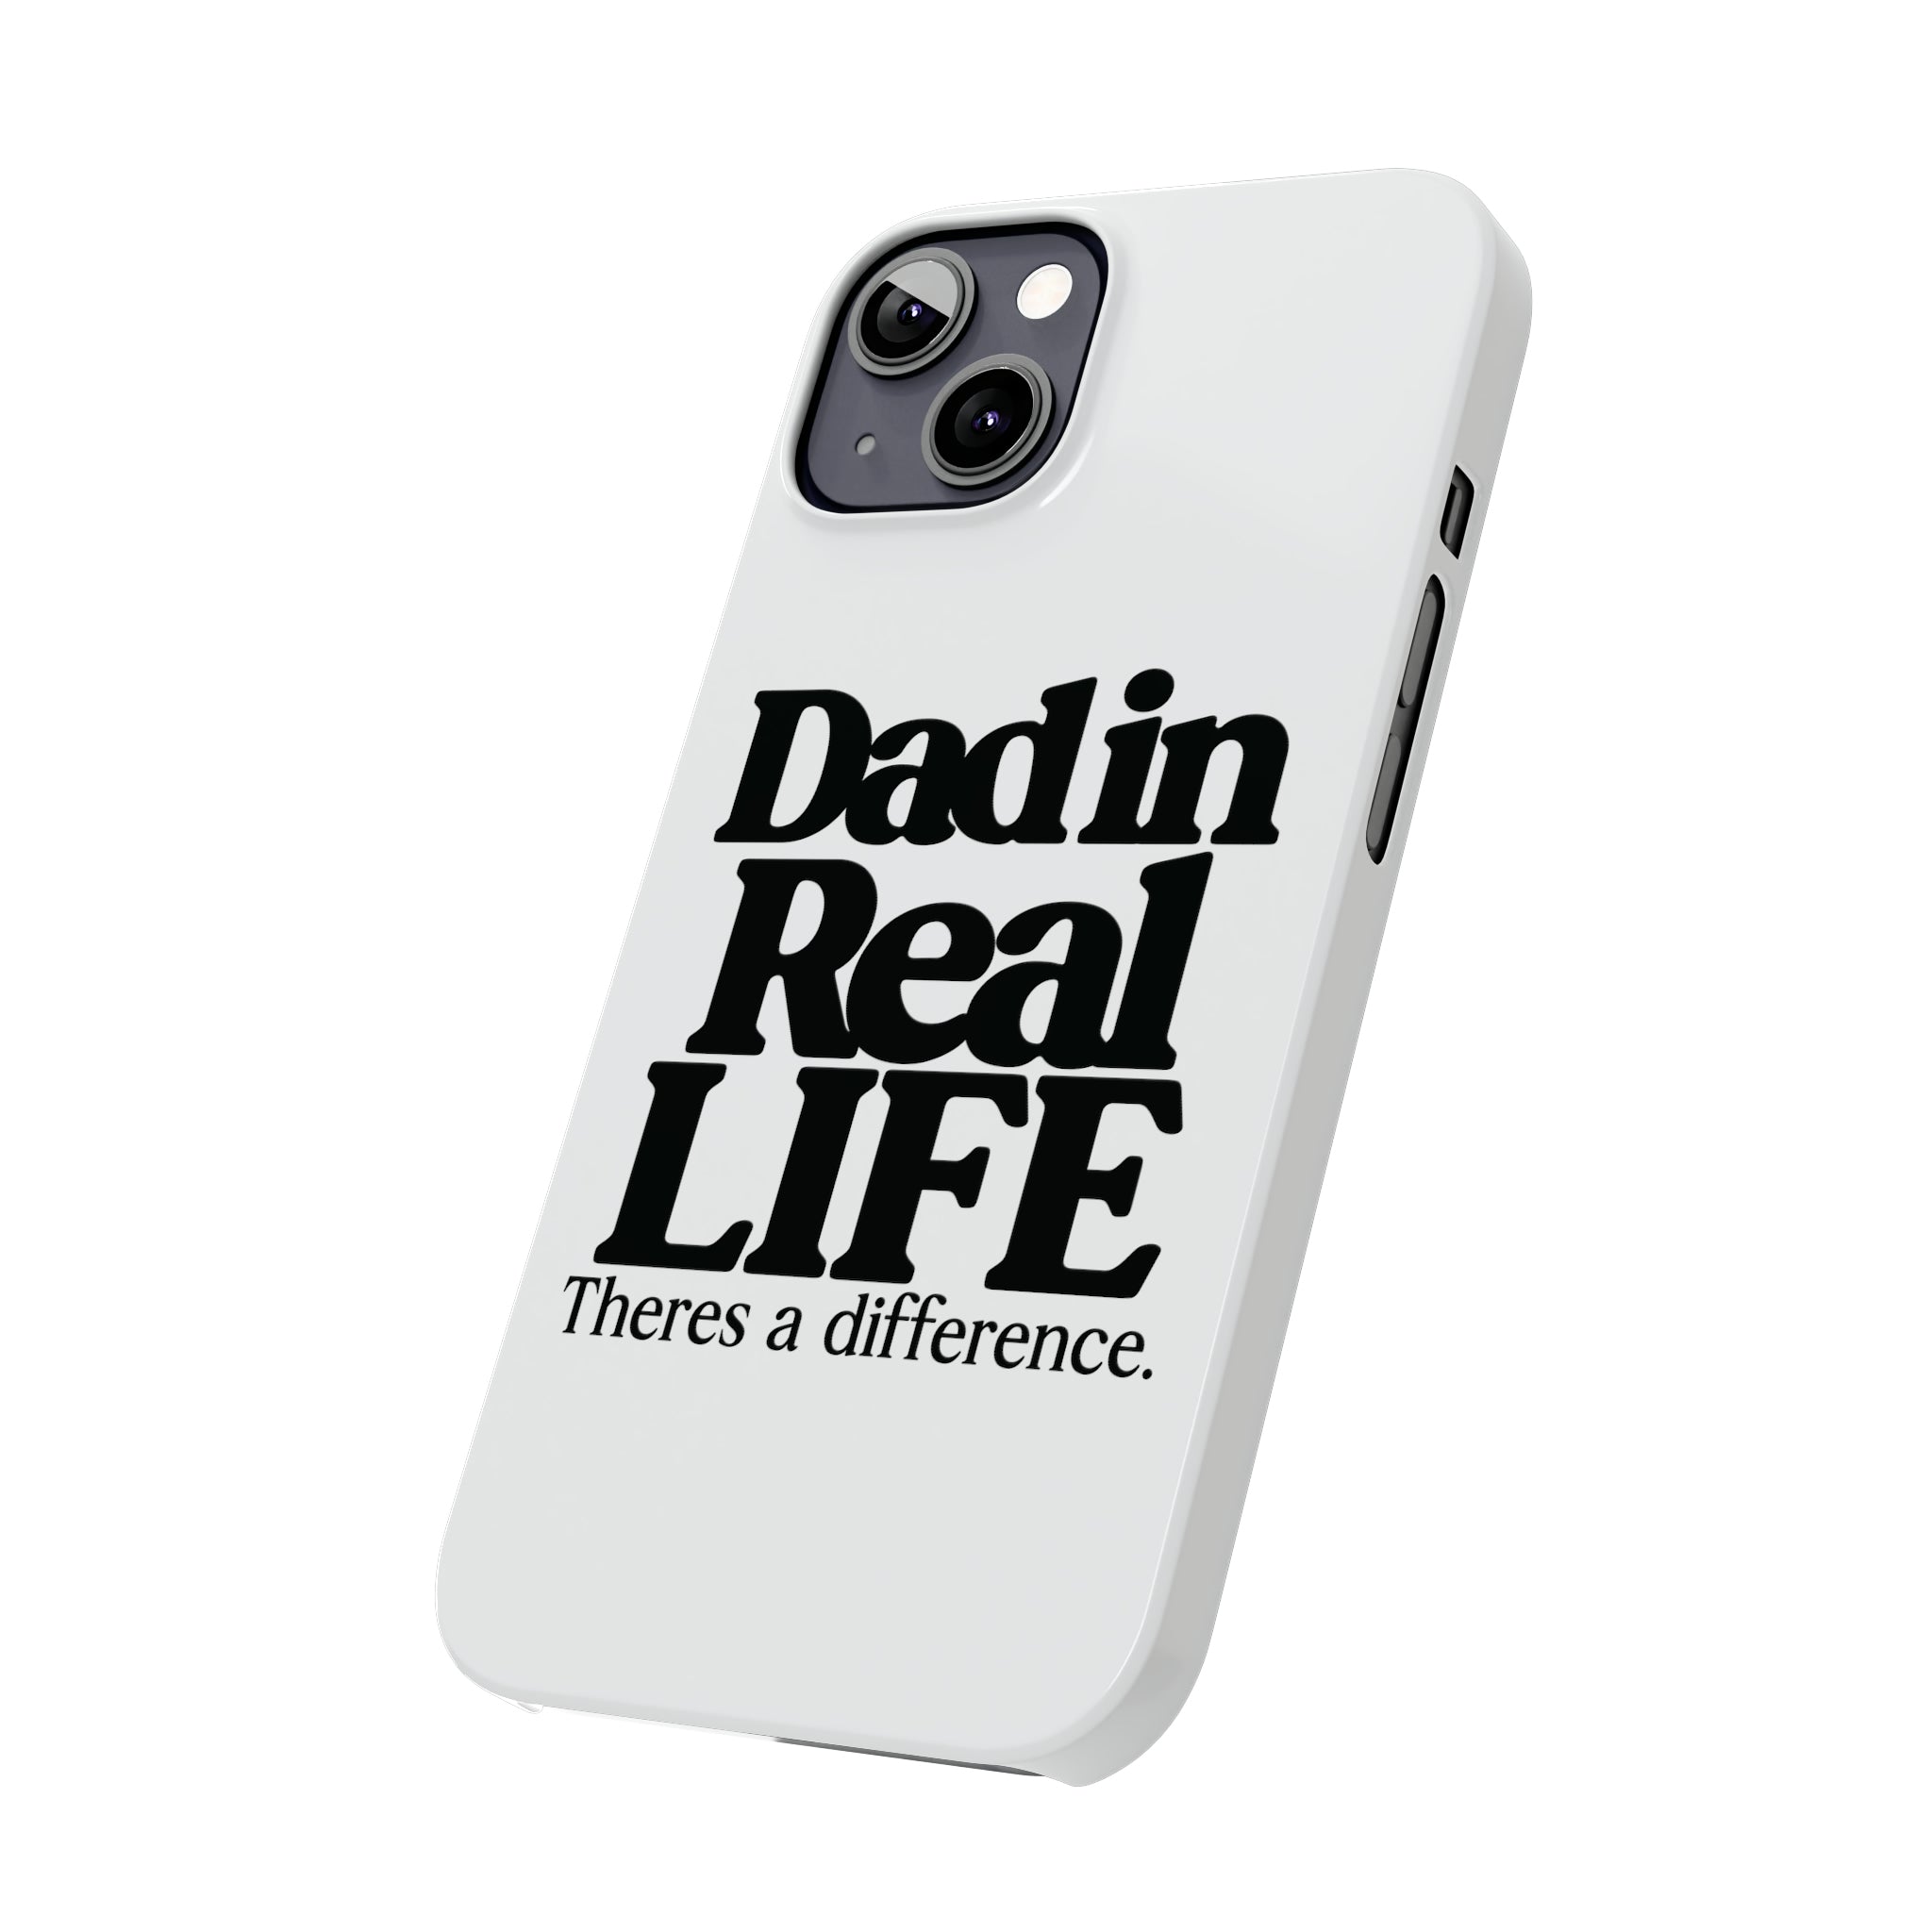 DAD Slim Phone Cases